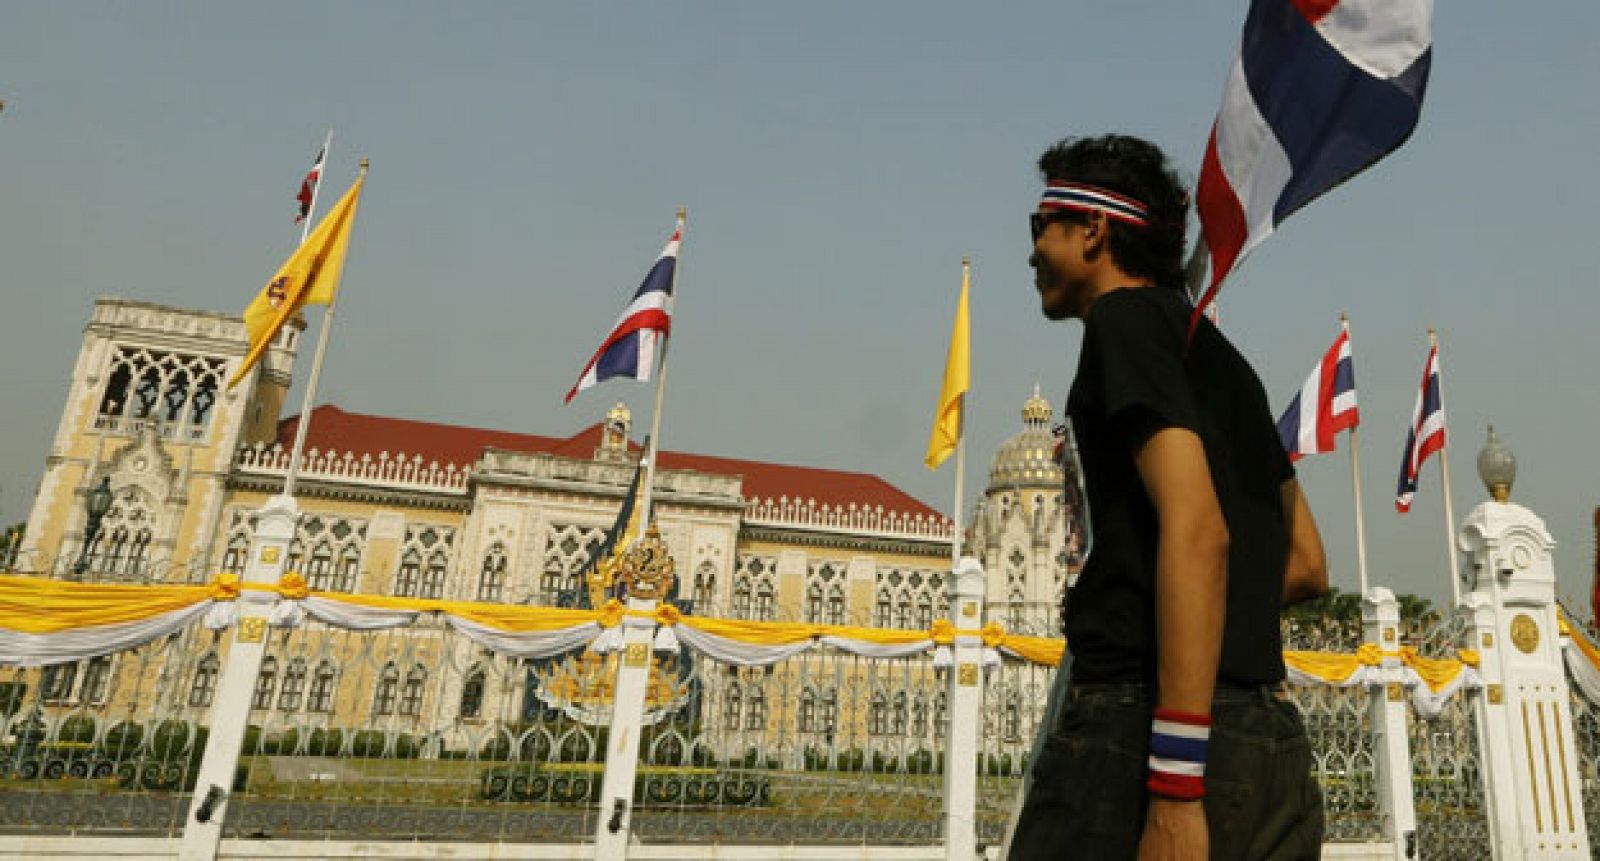 Un grupo de manifestantes escala la fachada de la residencia de la primera ministra en Tailandia